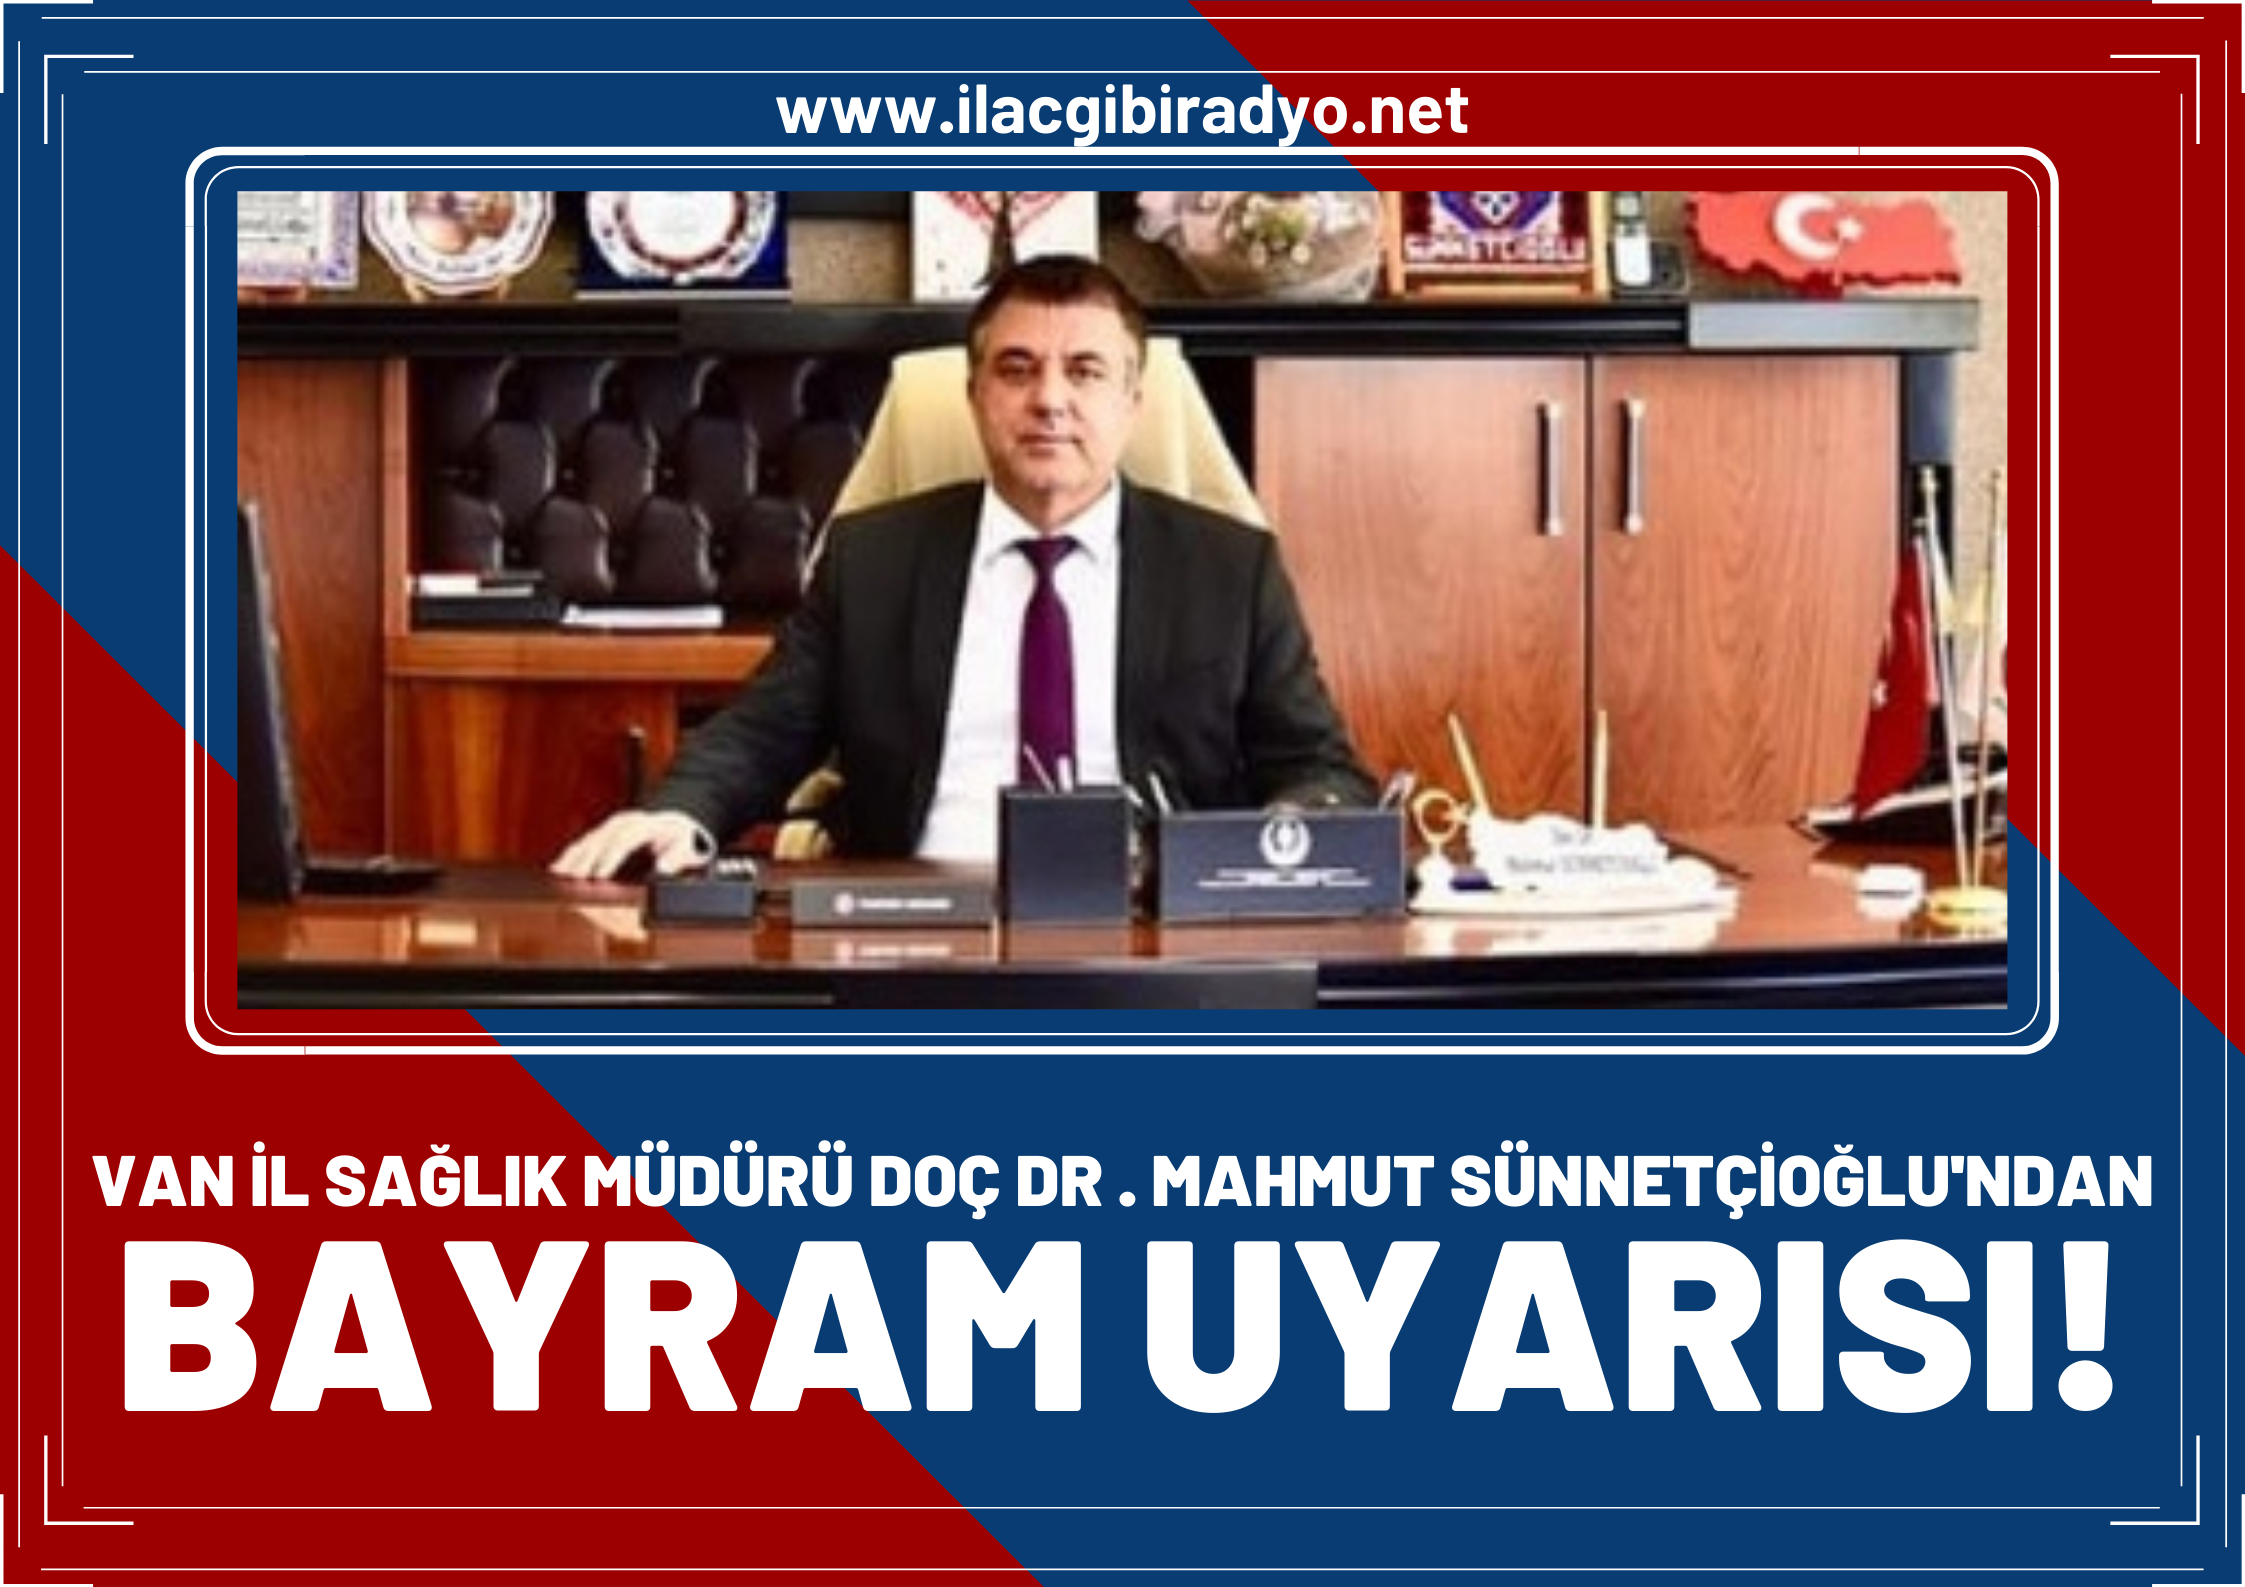 Van İl Sağlık Müdürü Doç.Dr.Sünnetçioğlu’dan bayram uyarısı!